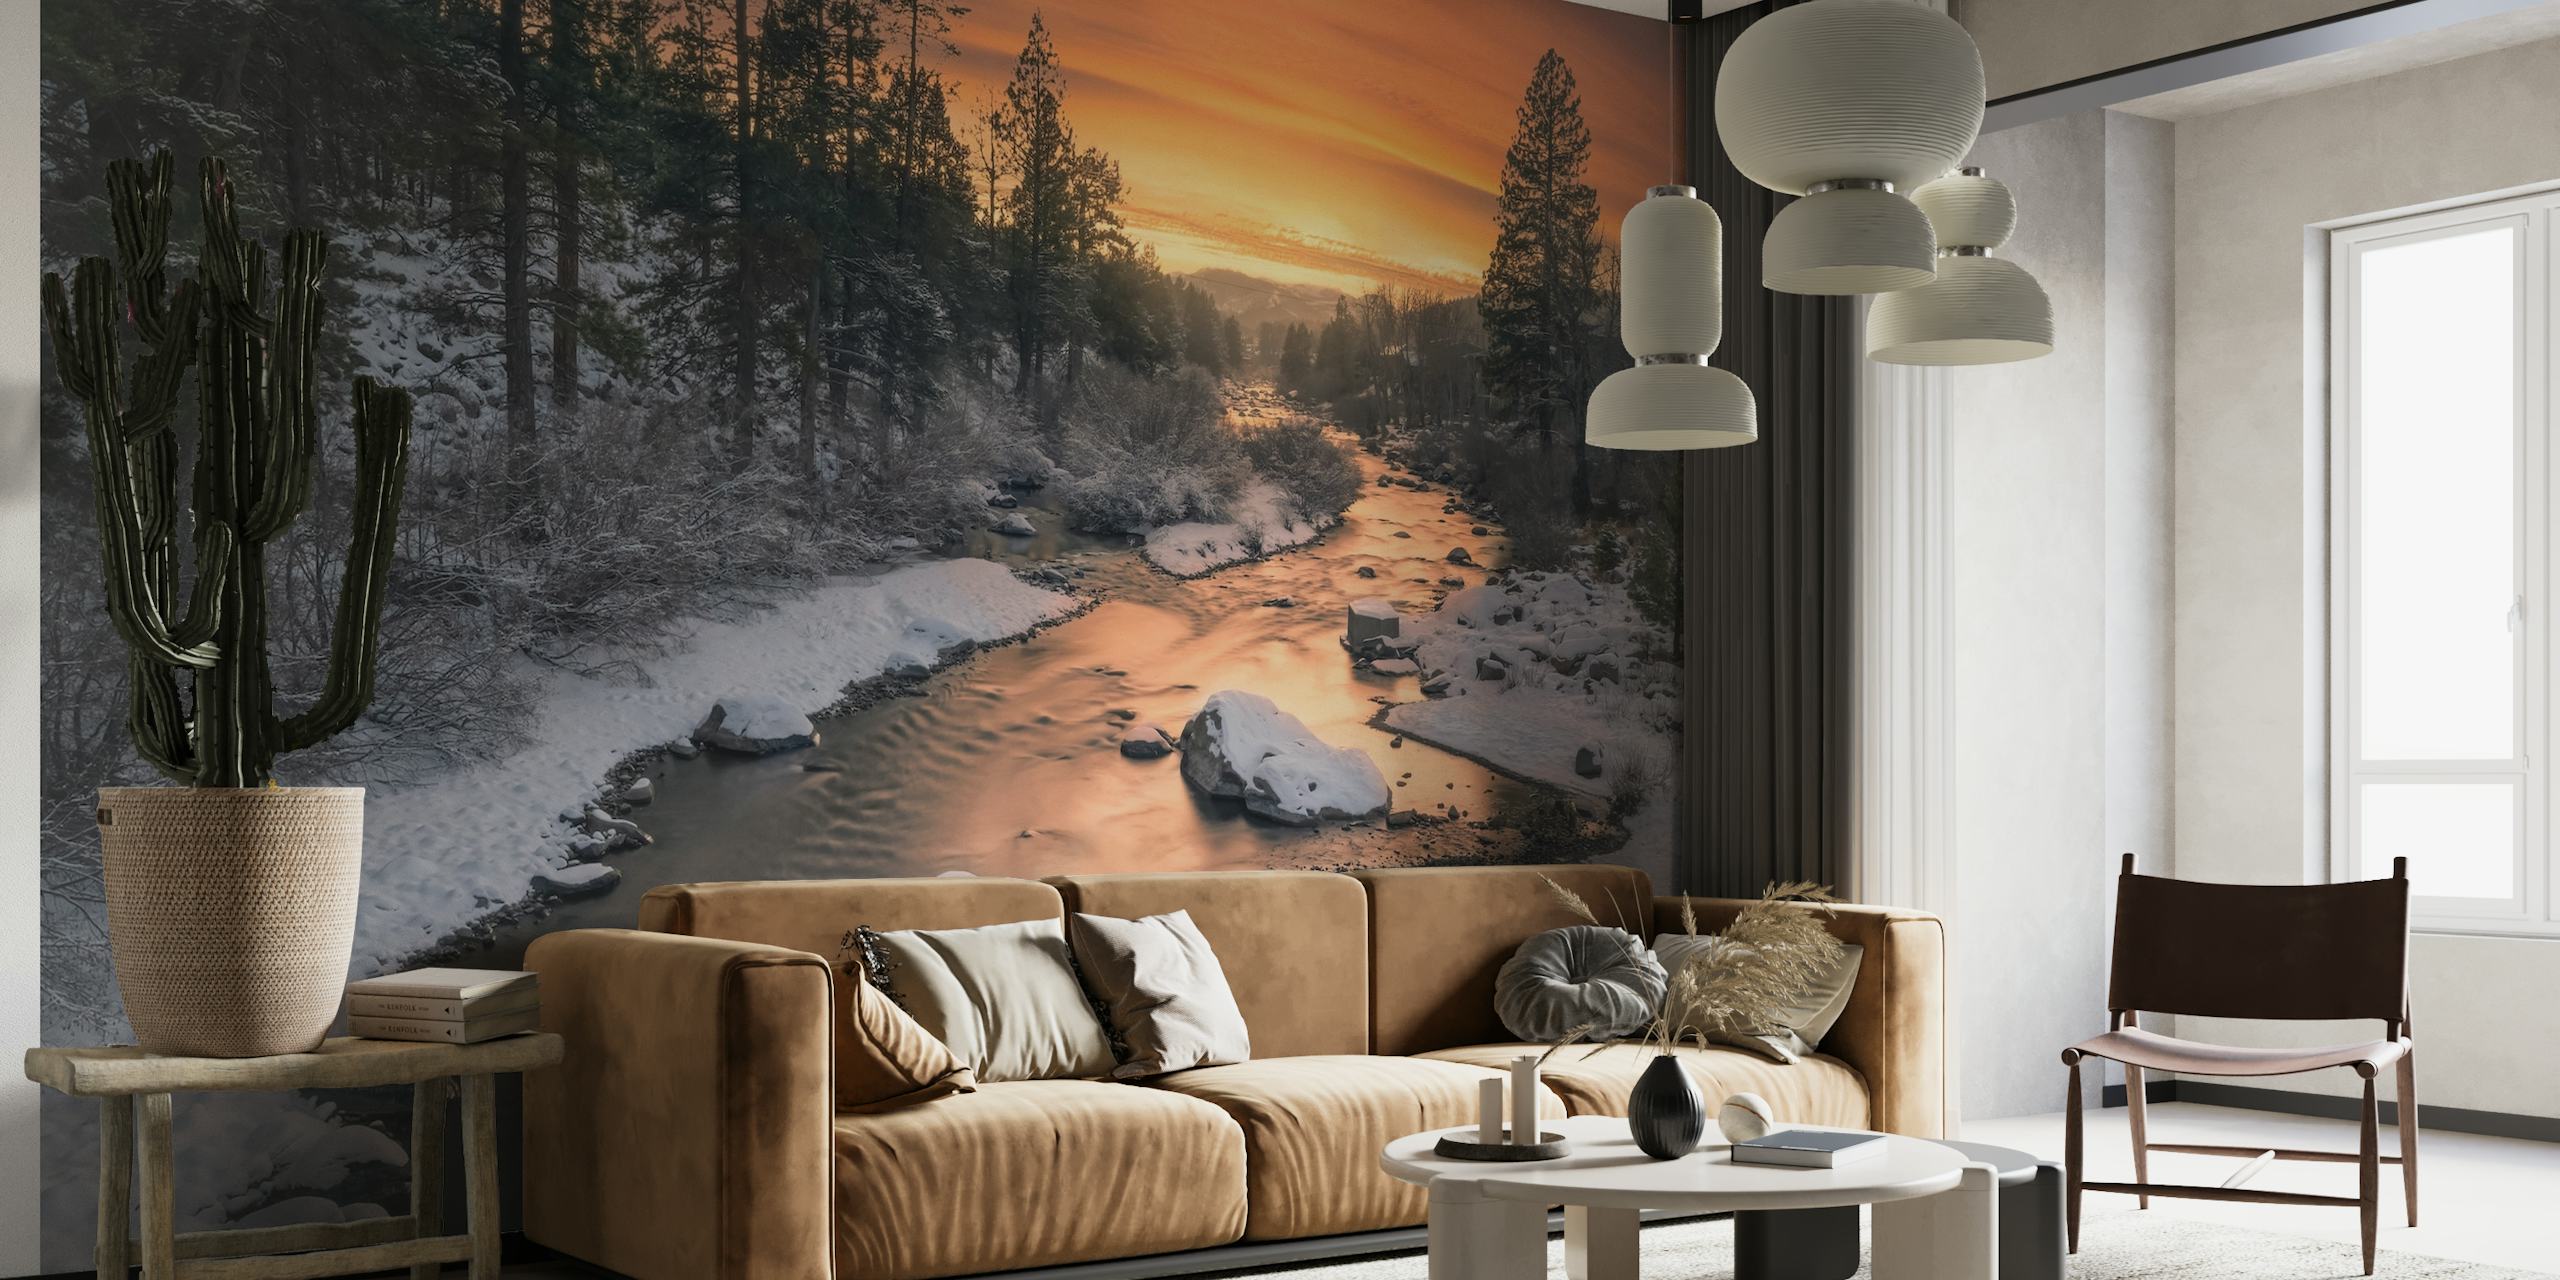 Truckee elveveggmaleri med solnedgang og snølandskap